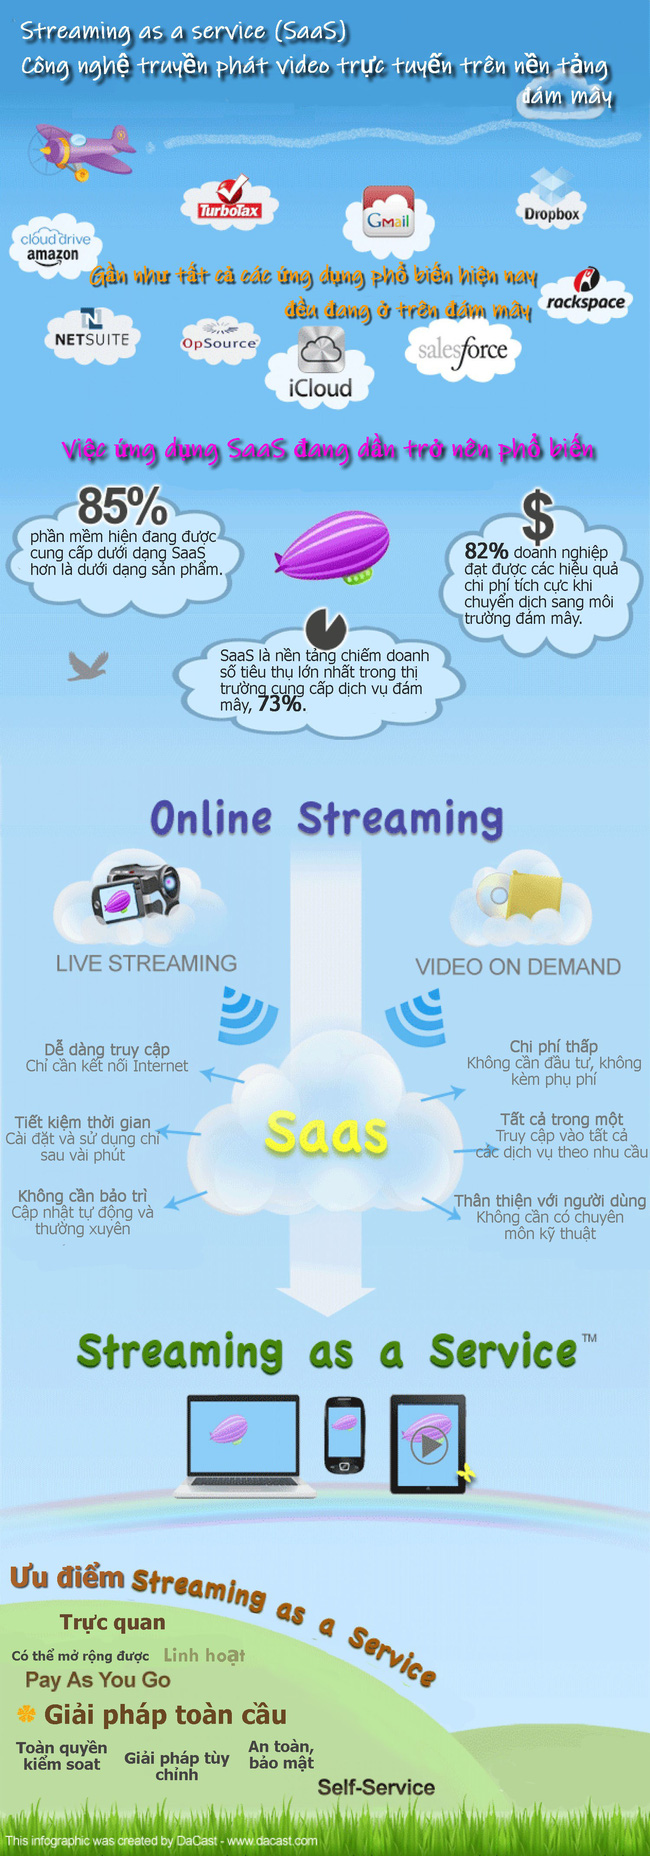 [Infographic] Streaming as a service (SaaS) – Công nghệ truyền phát video trực tuyến trên nền tảng đám mây - Ảnh 1.